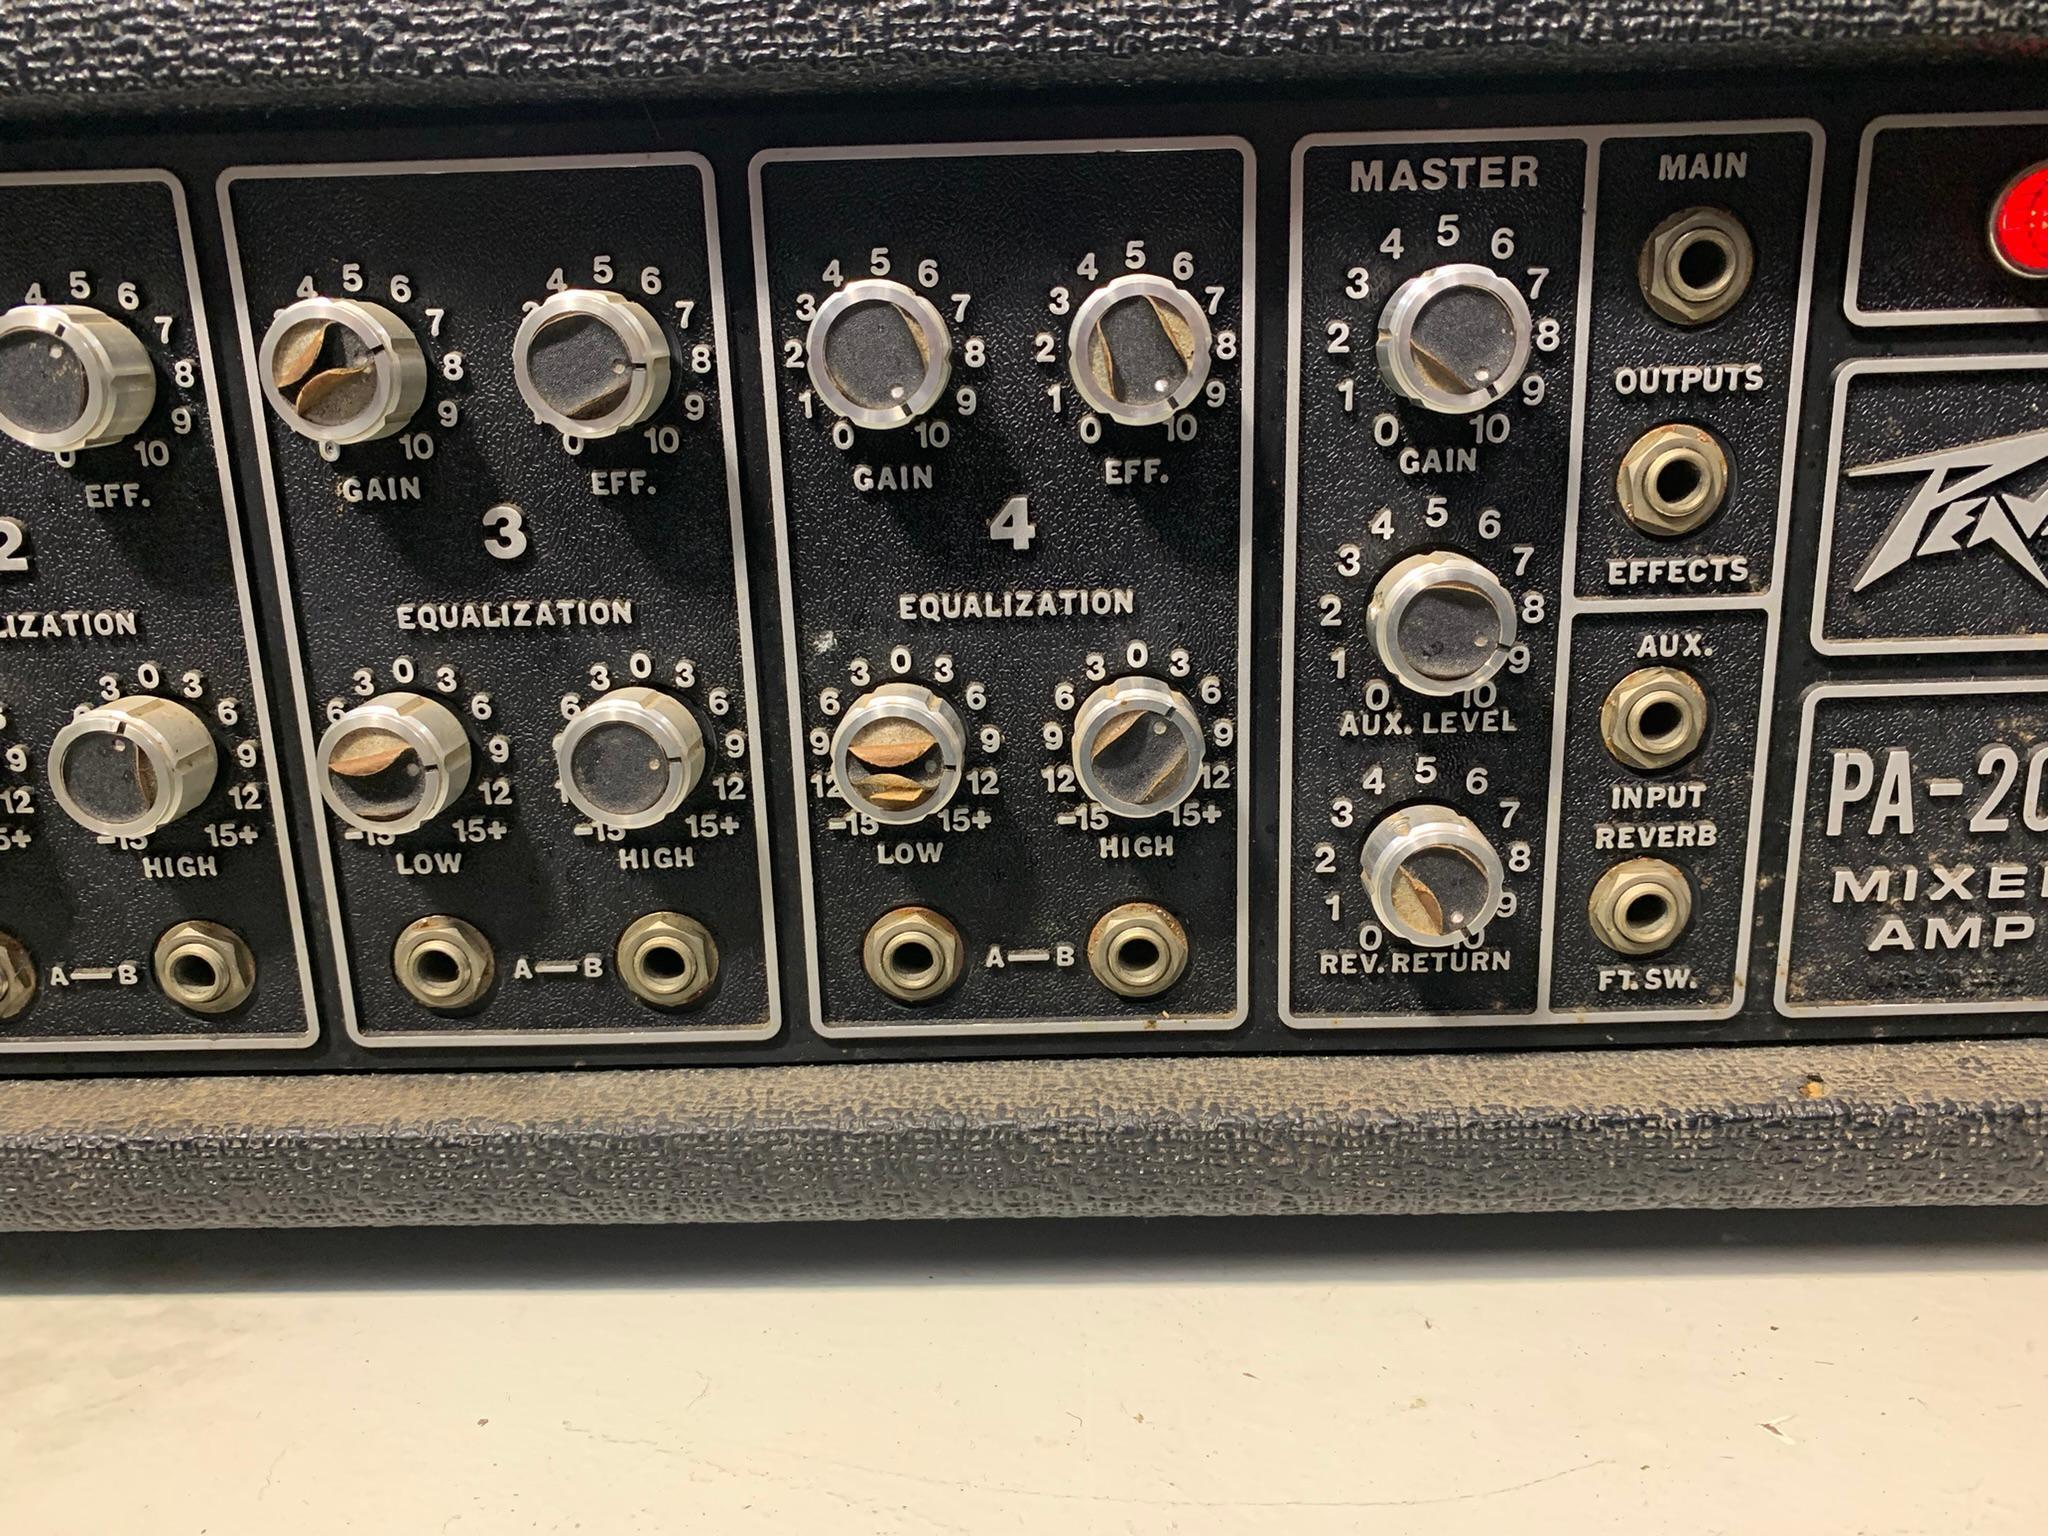 Peavey PA-200 Mix Amp